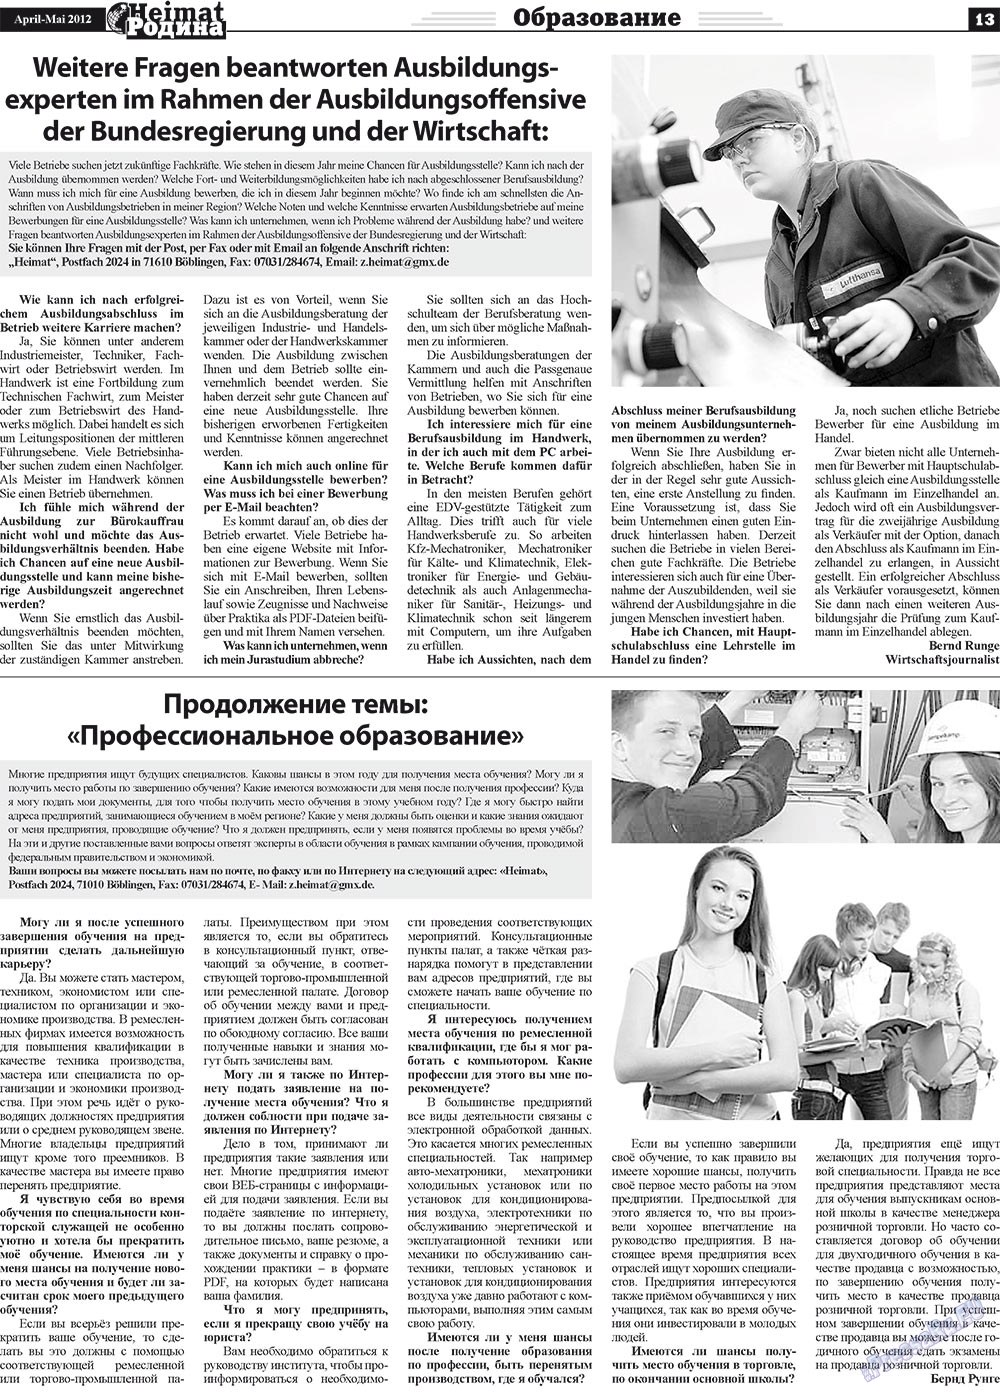 Heimat-Родина (газета). 2012 год, номер 4, стр. 13